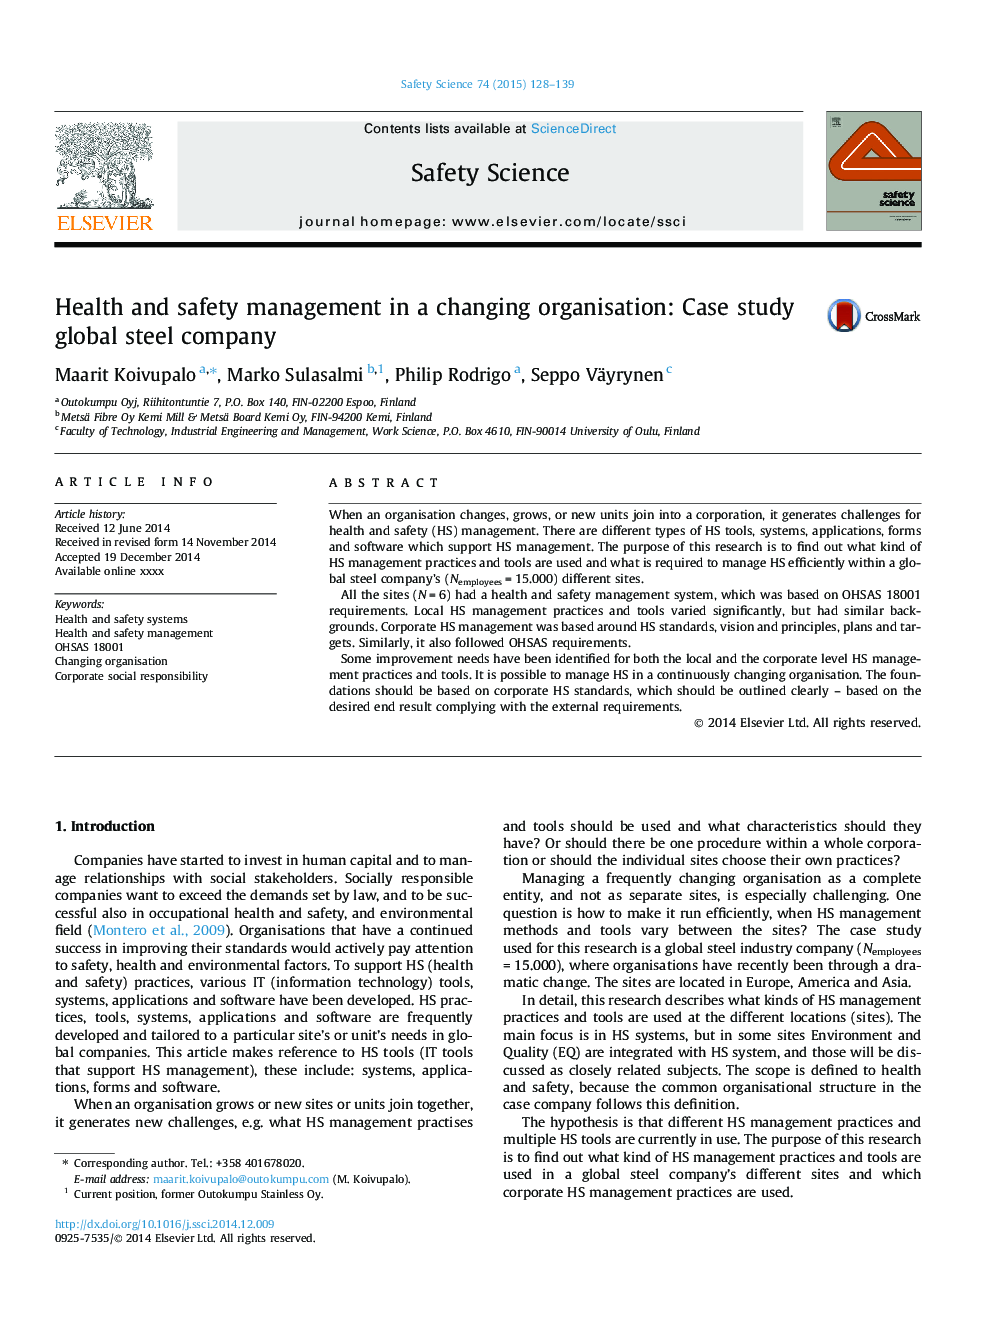 مدیریت بهداشت و ایمنی در سازمان تغییر: مطالعه موردی شرکت فولاد جهانی 